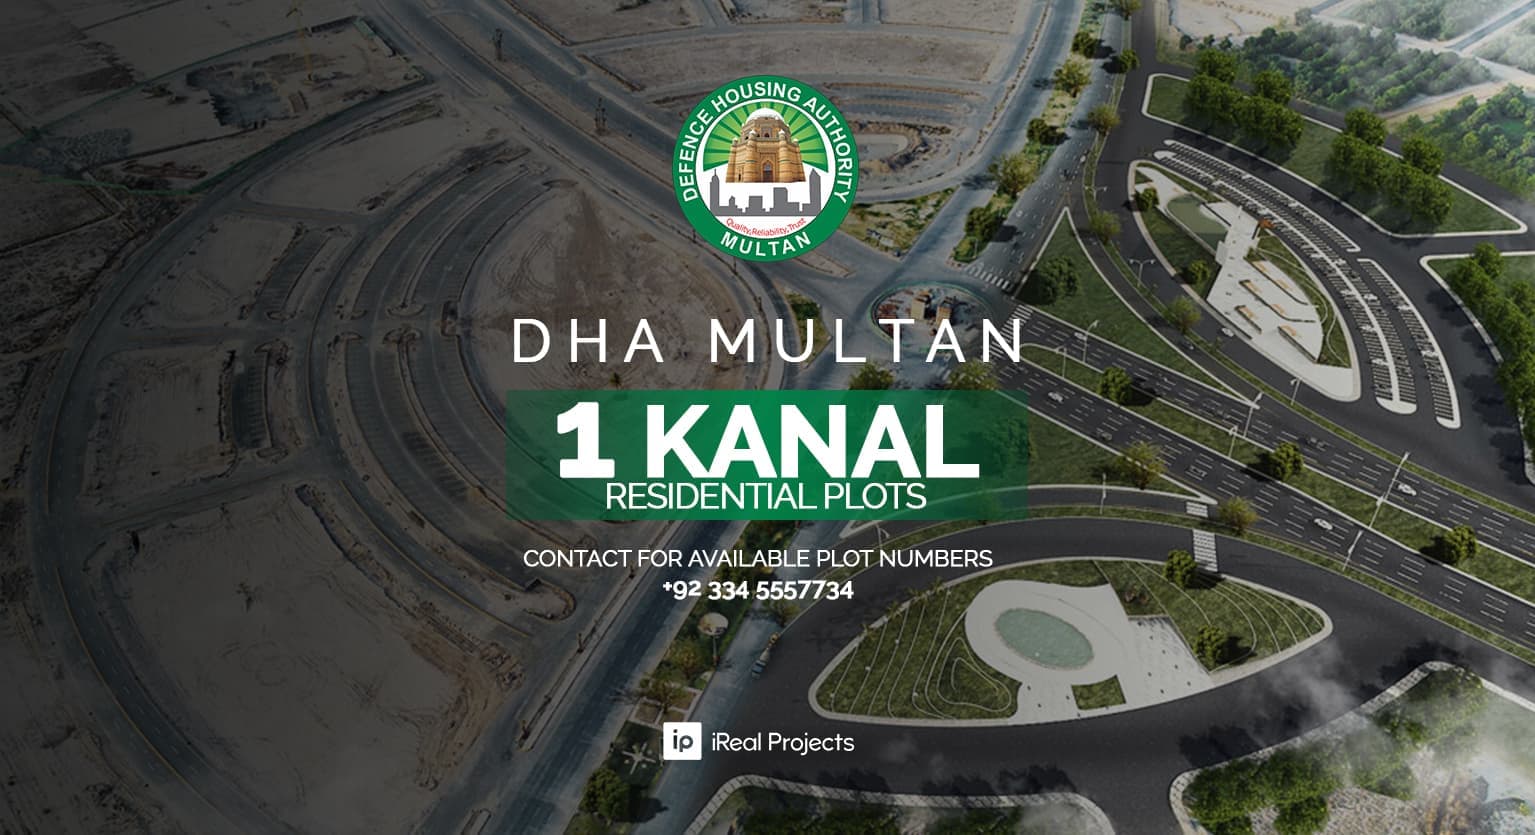 1 Kanal Plots in DHA Multan